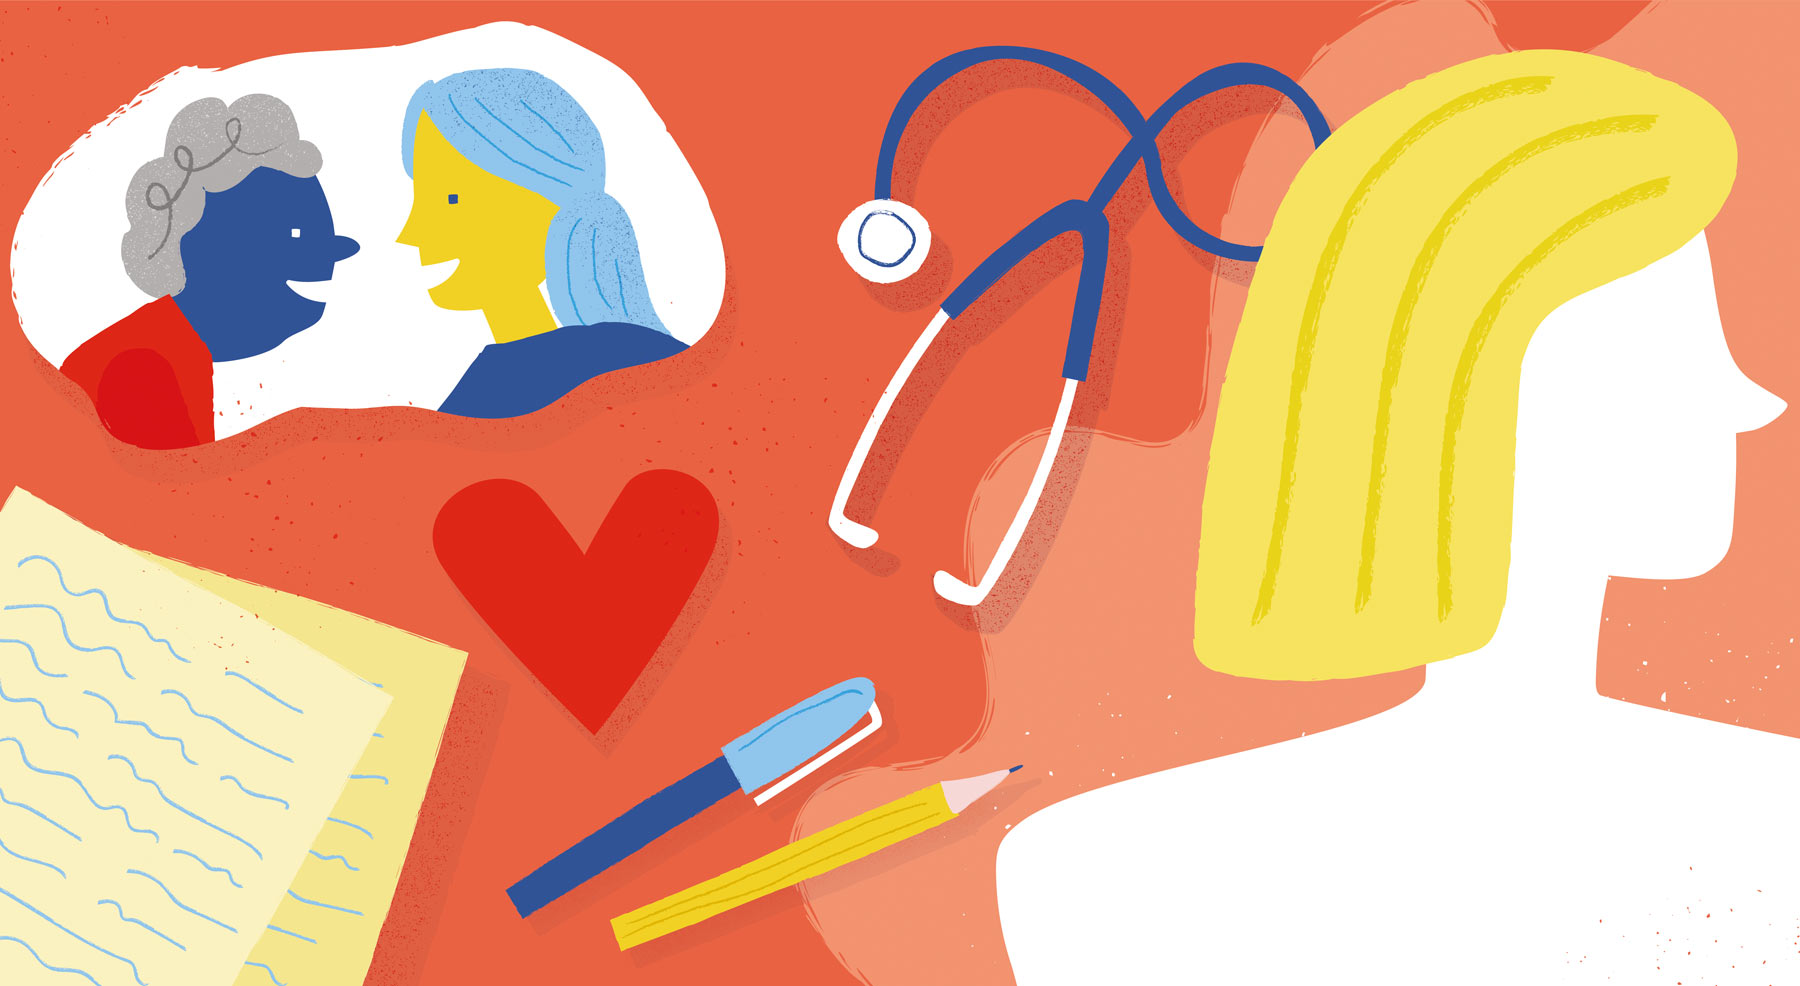 Illustration for Nursefinders by Elly Jahnz